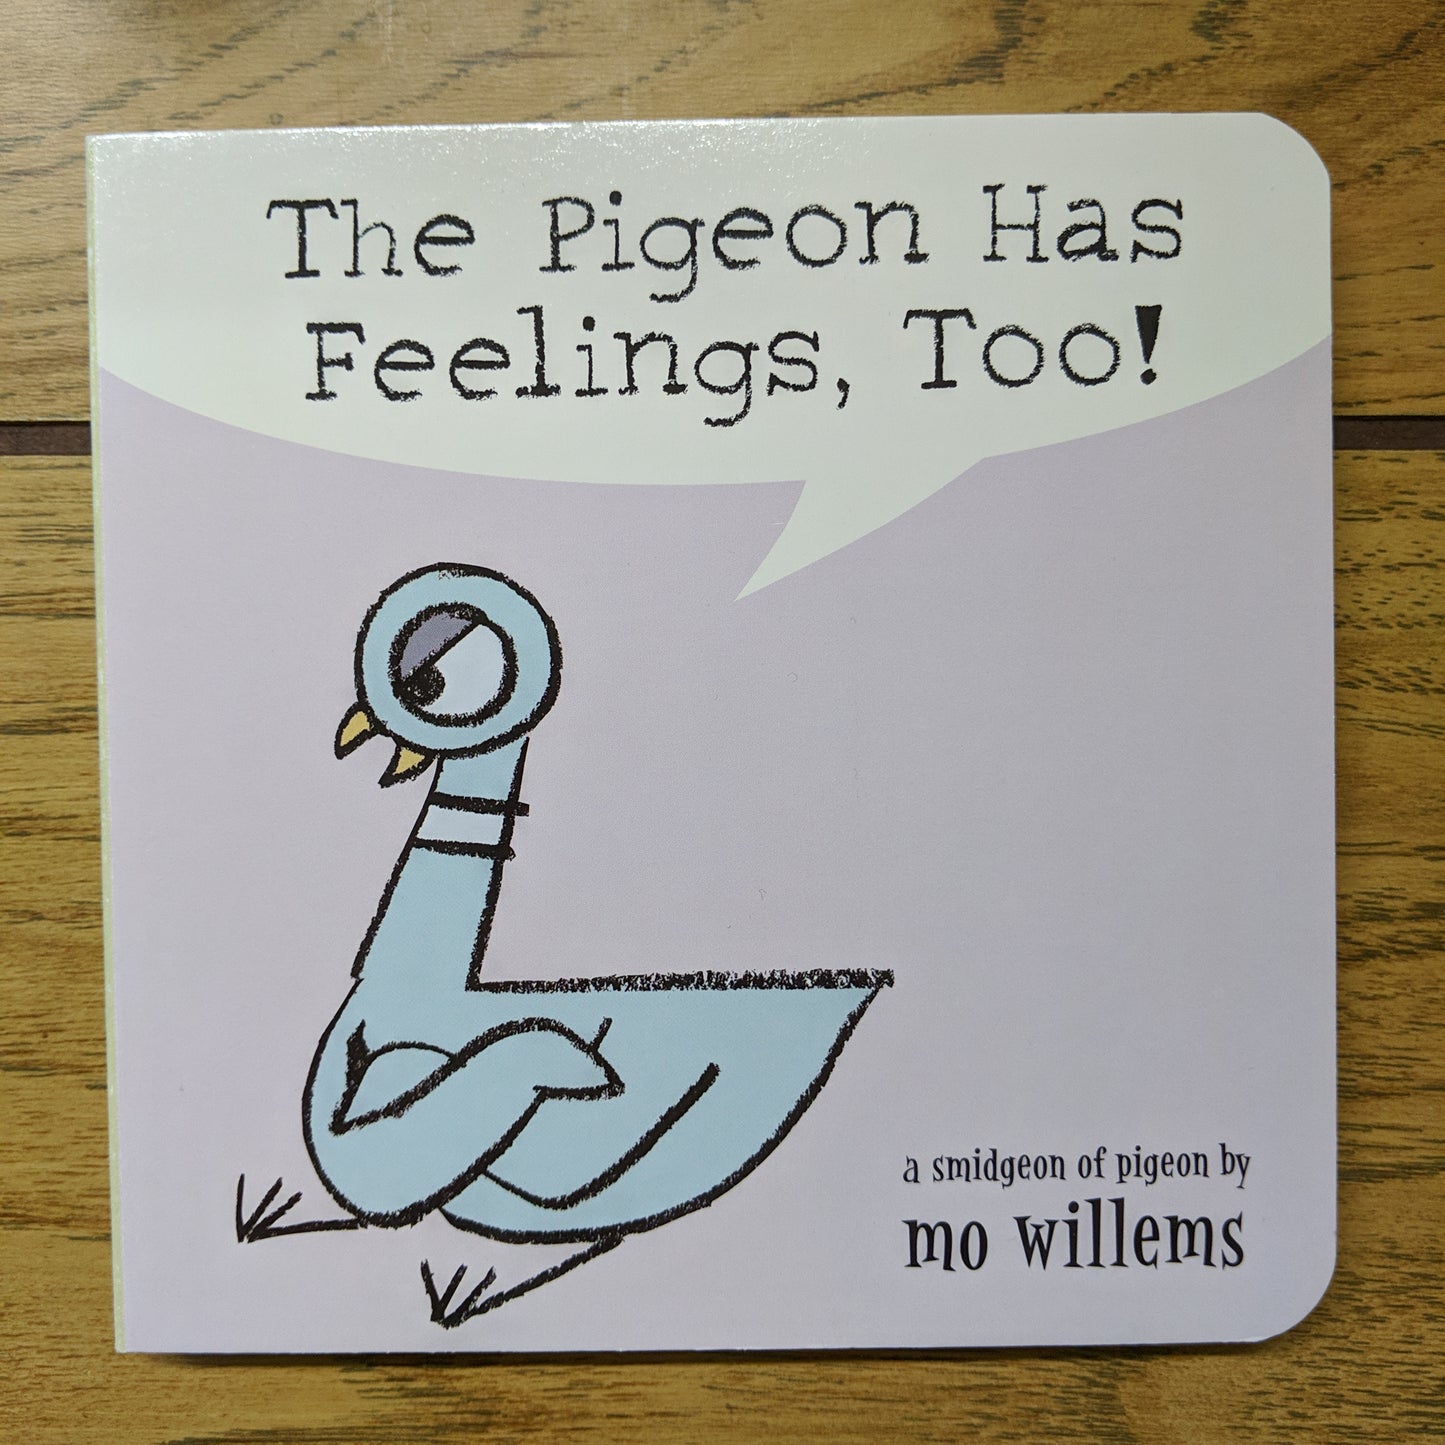 The Pigeon Has Feelings, Too!